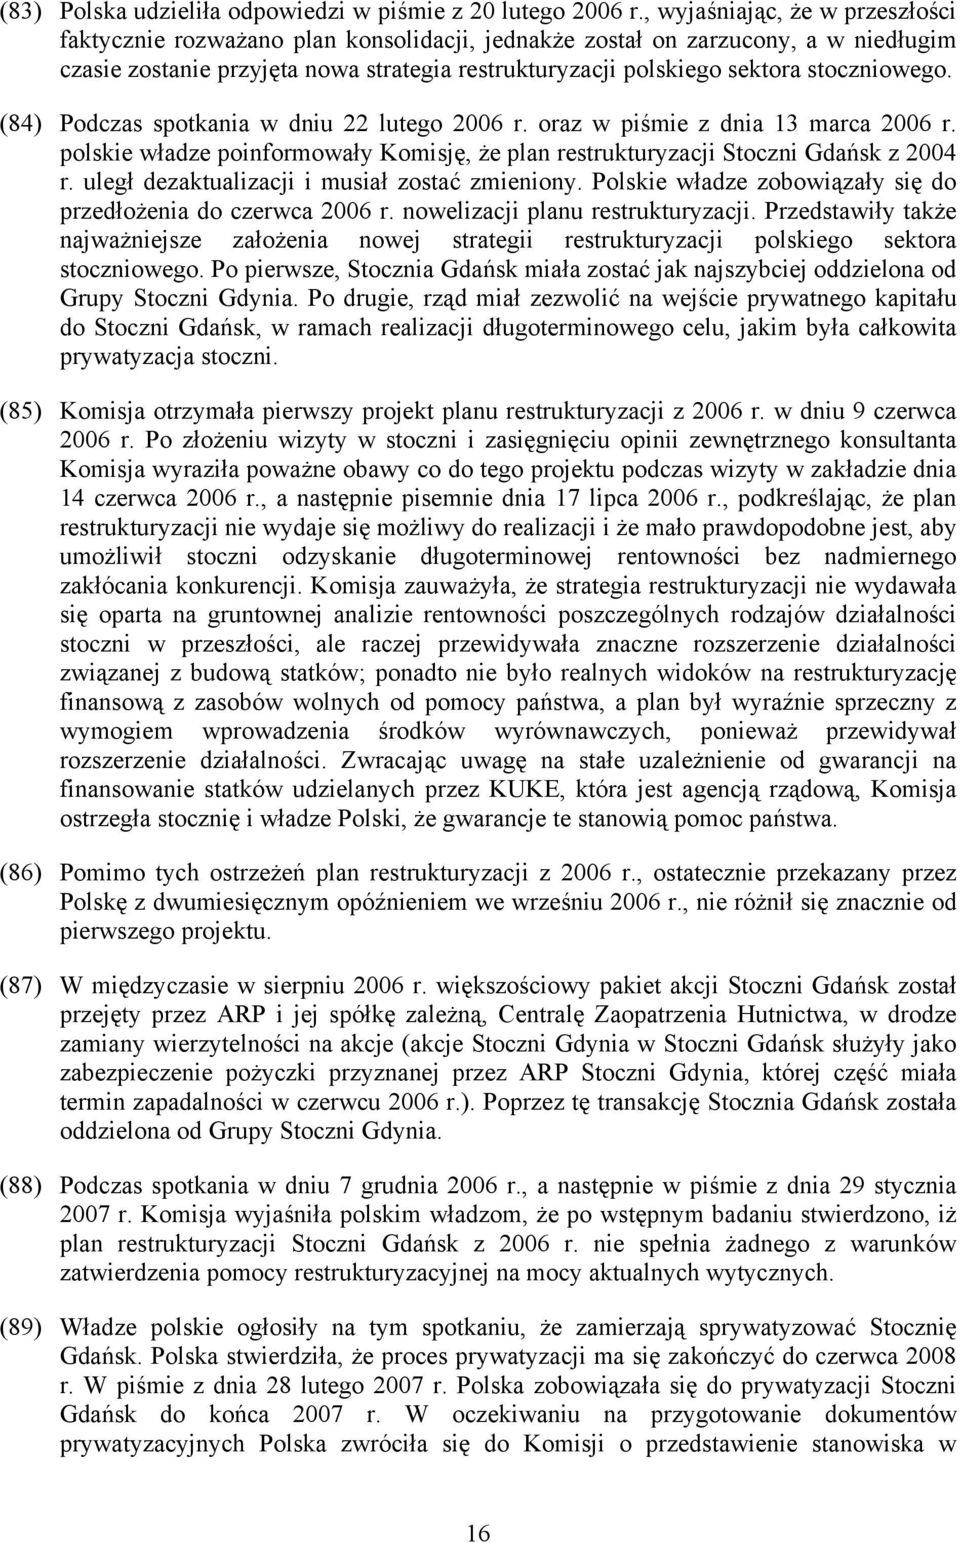 stoczniowego. (84) Podczas spotkania w dniu 22 lutego 2006 r. oraz w piśmie z dnia 13 marca 2006 r. polskie władze poinformowały Komisję, że plan restrukturyzacji Stoczni Gdańsk z 2004 r.